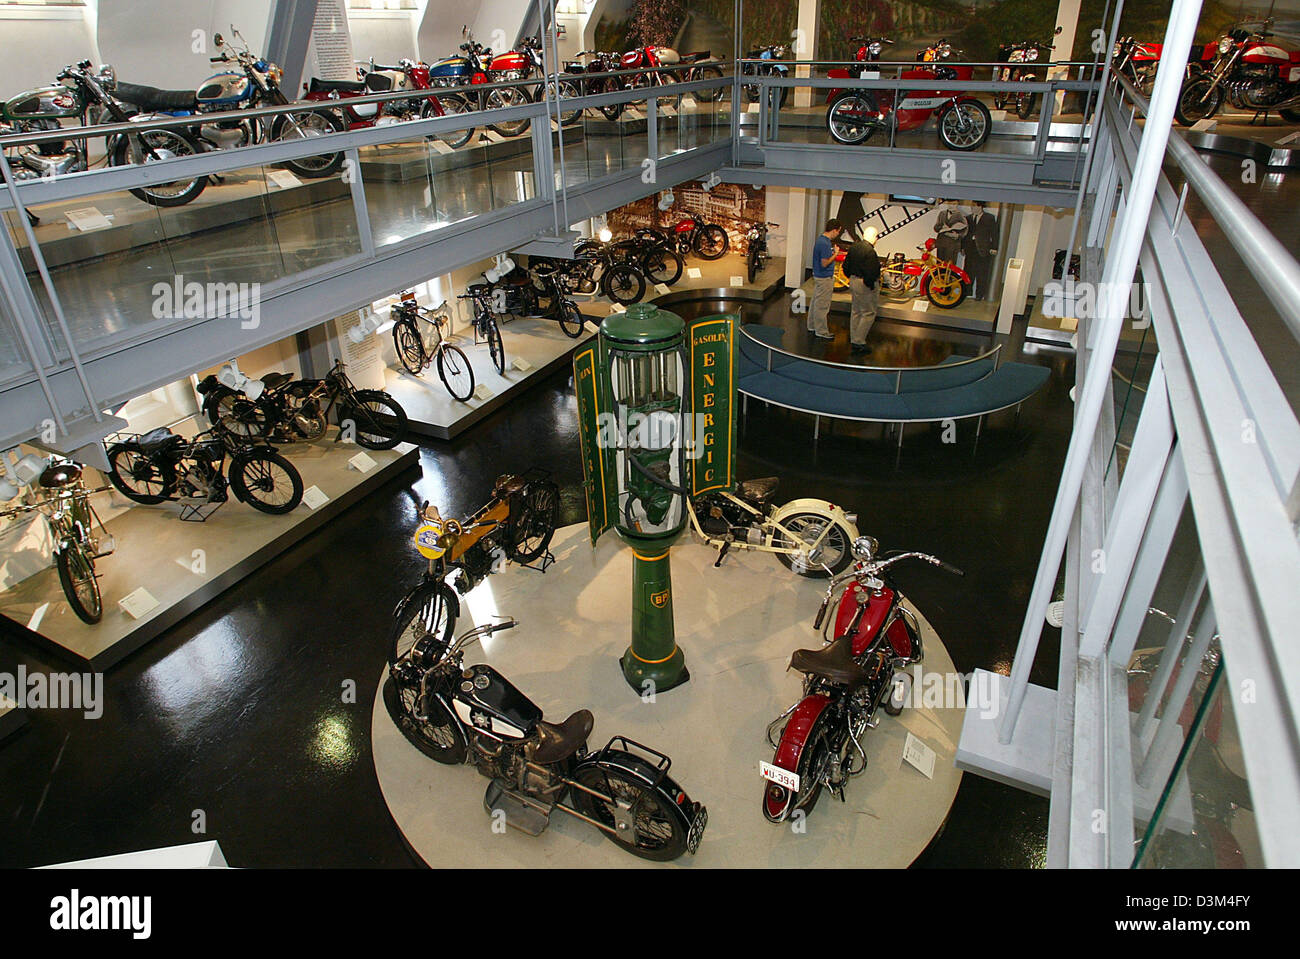 (Dpa) - Visitatori (C, indietro) passeggiare lungo le gallerie dotate di biciclette e motocicli a 'Zweirad Museum', museo per veicoli a due ruote, in Neckarsulm, Germania, 07 novembre 2005. Secondo il management, il museo, che è stato inaugurato nel 1956, ospita la più grande collezione storica di veicoli a due ruote in Germania con circa 400 presenta. Foto: Harry Melchert Foto Stock